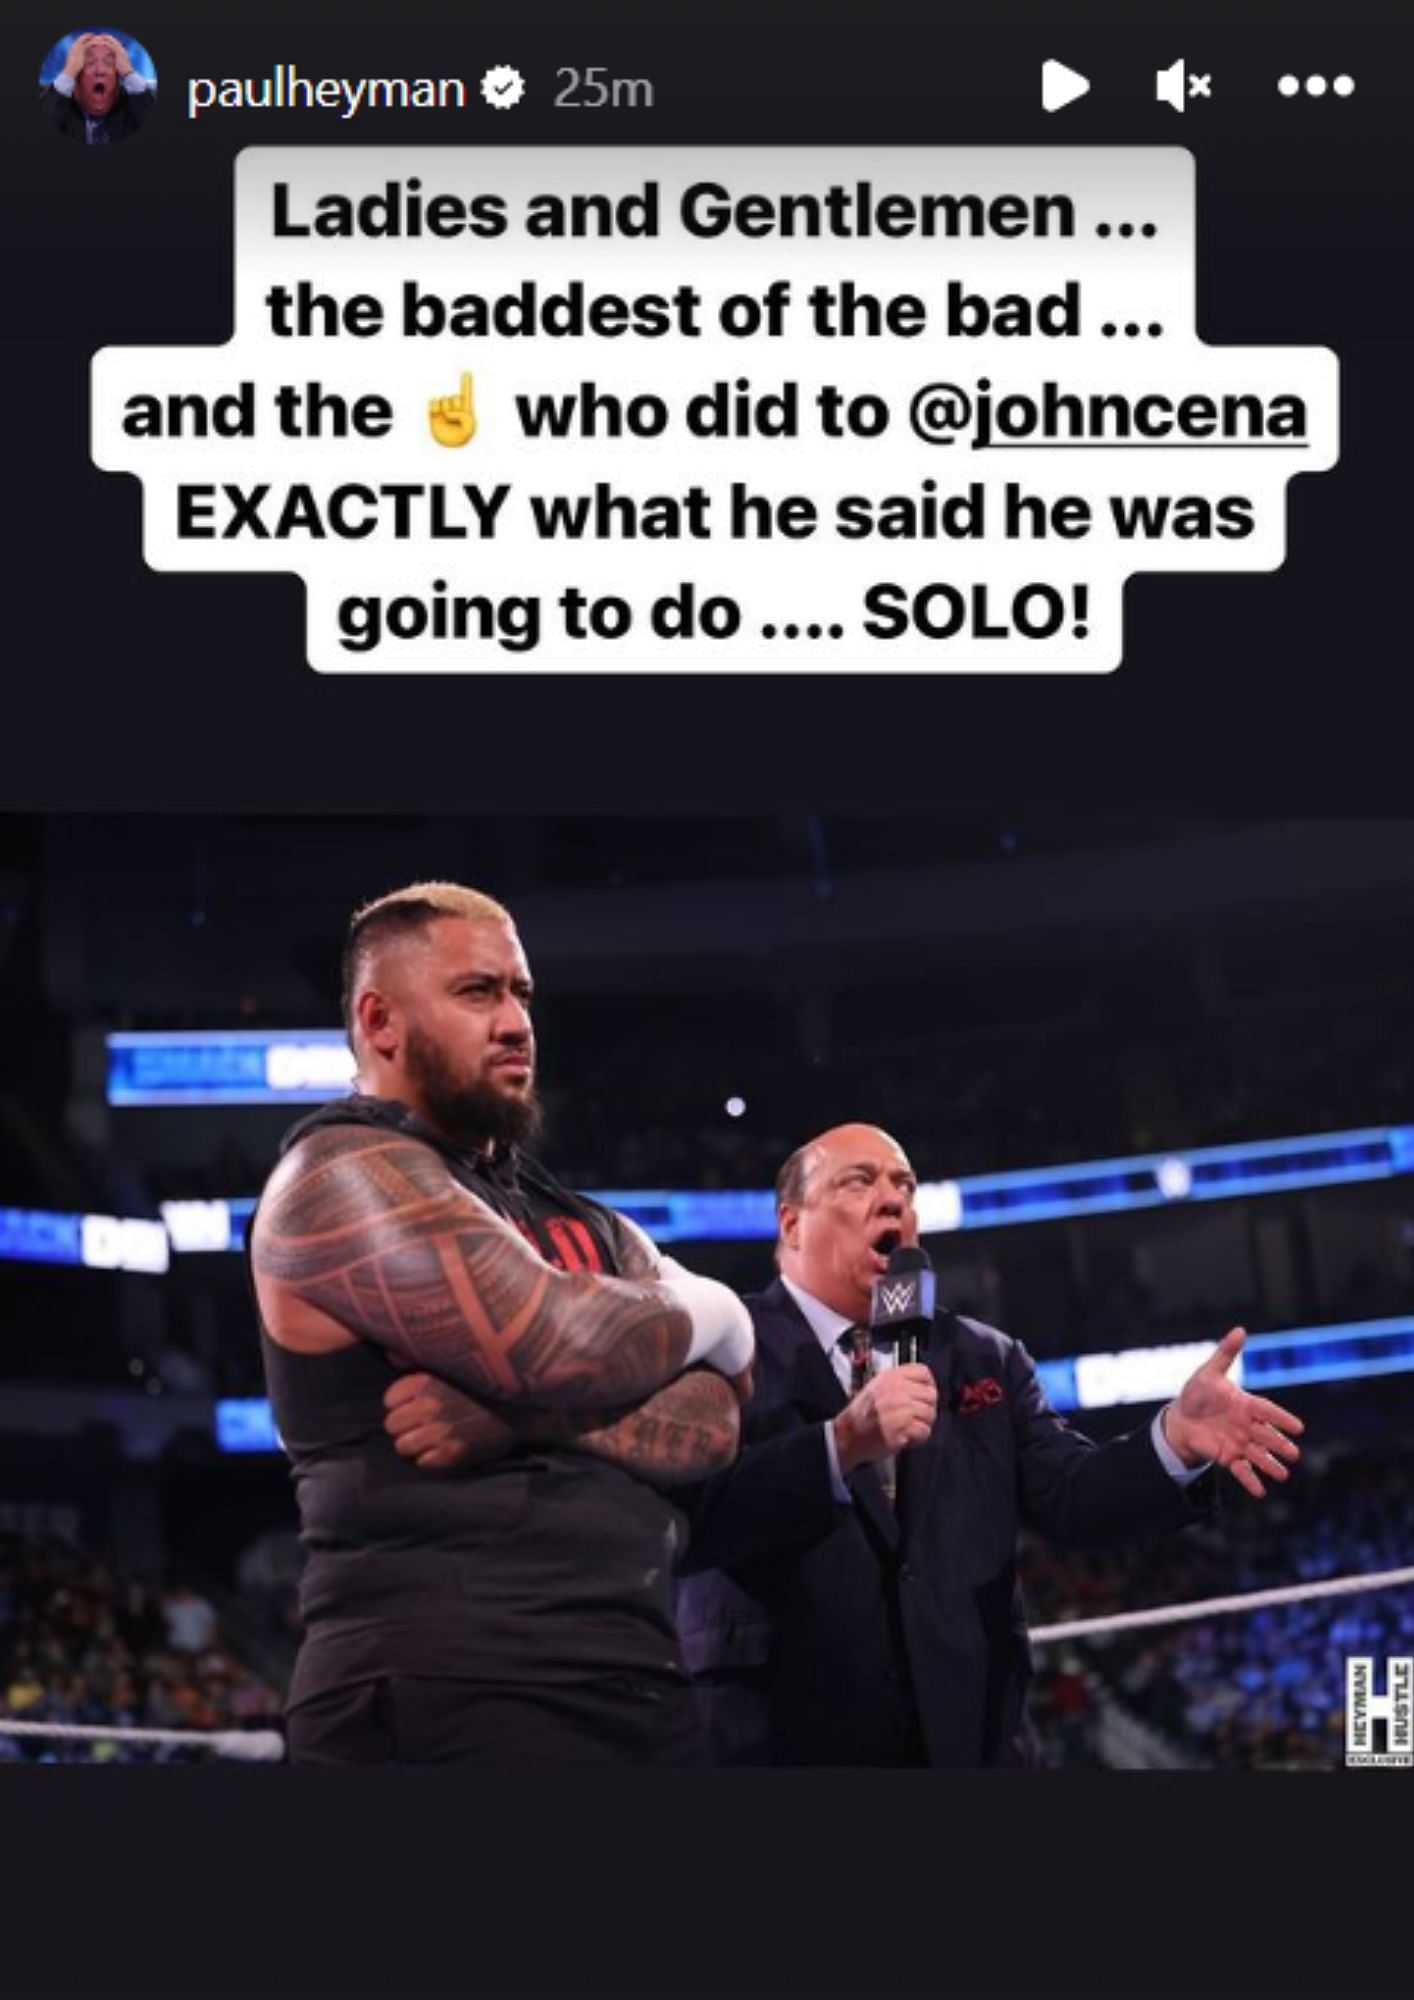 पॉल हेमन ने सोशल मीडिया पर WWE स्टार सोलो सिकोआ की तारीफ की है